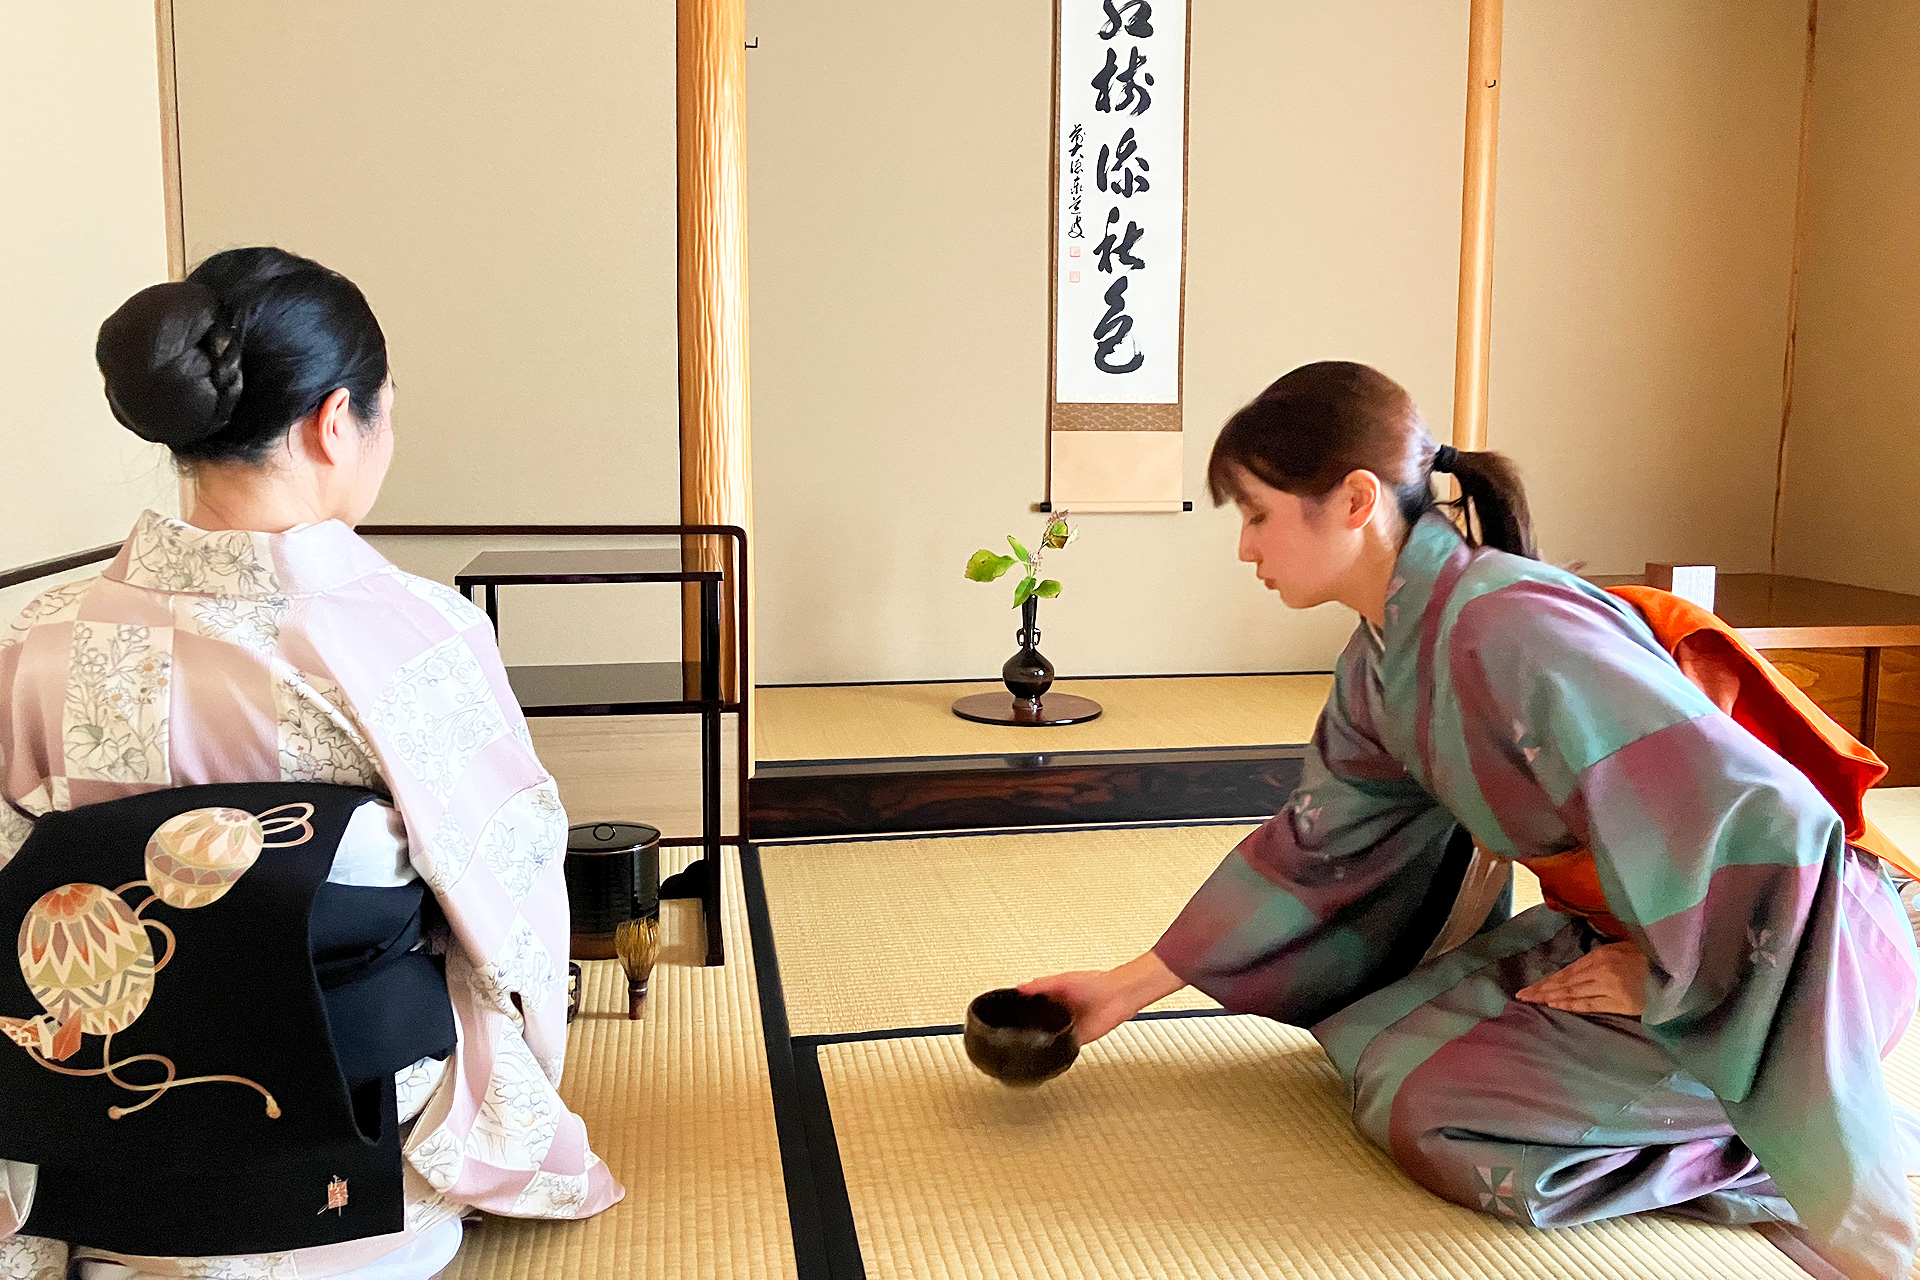 札幌での茶道教室の様子